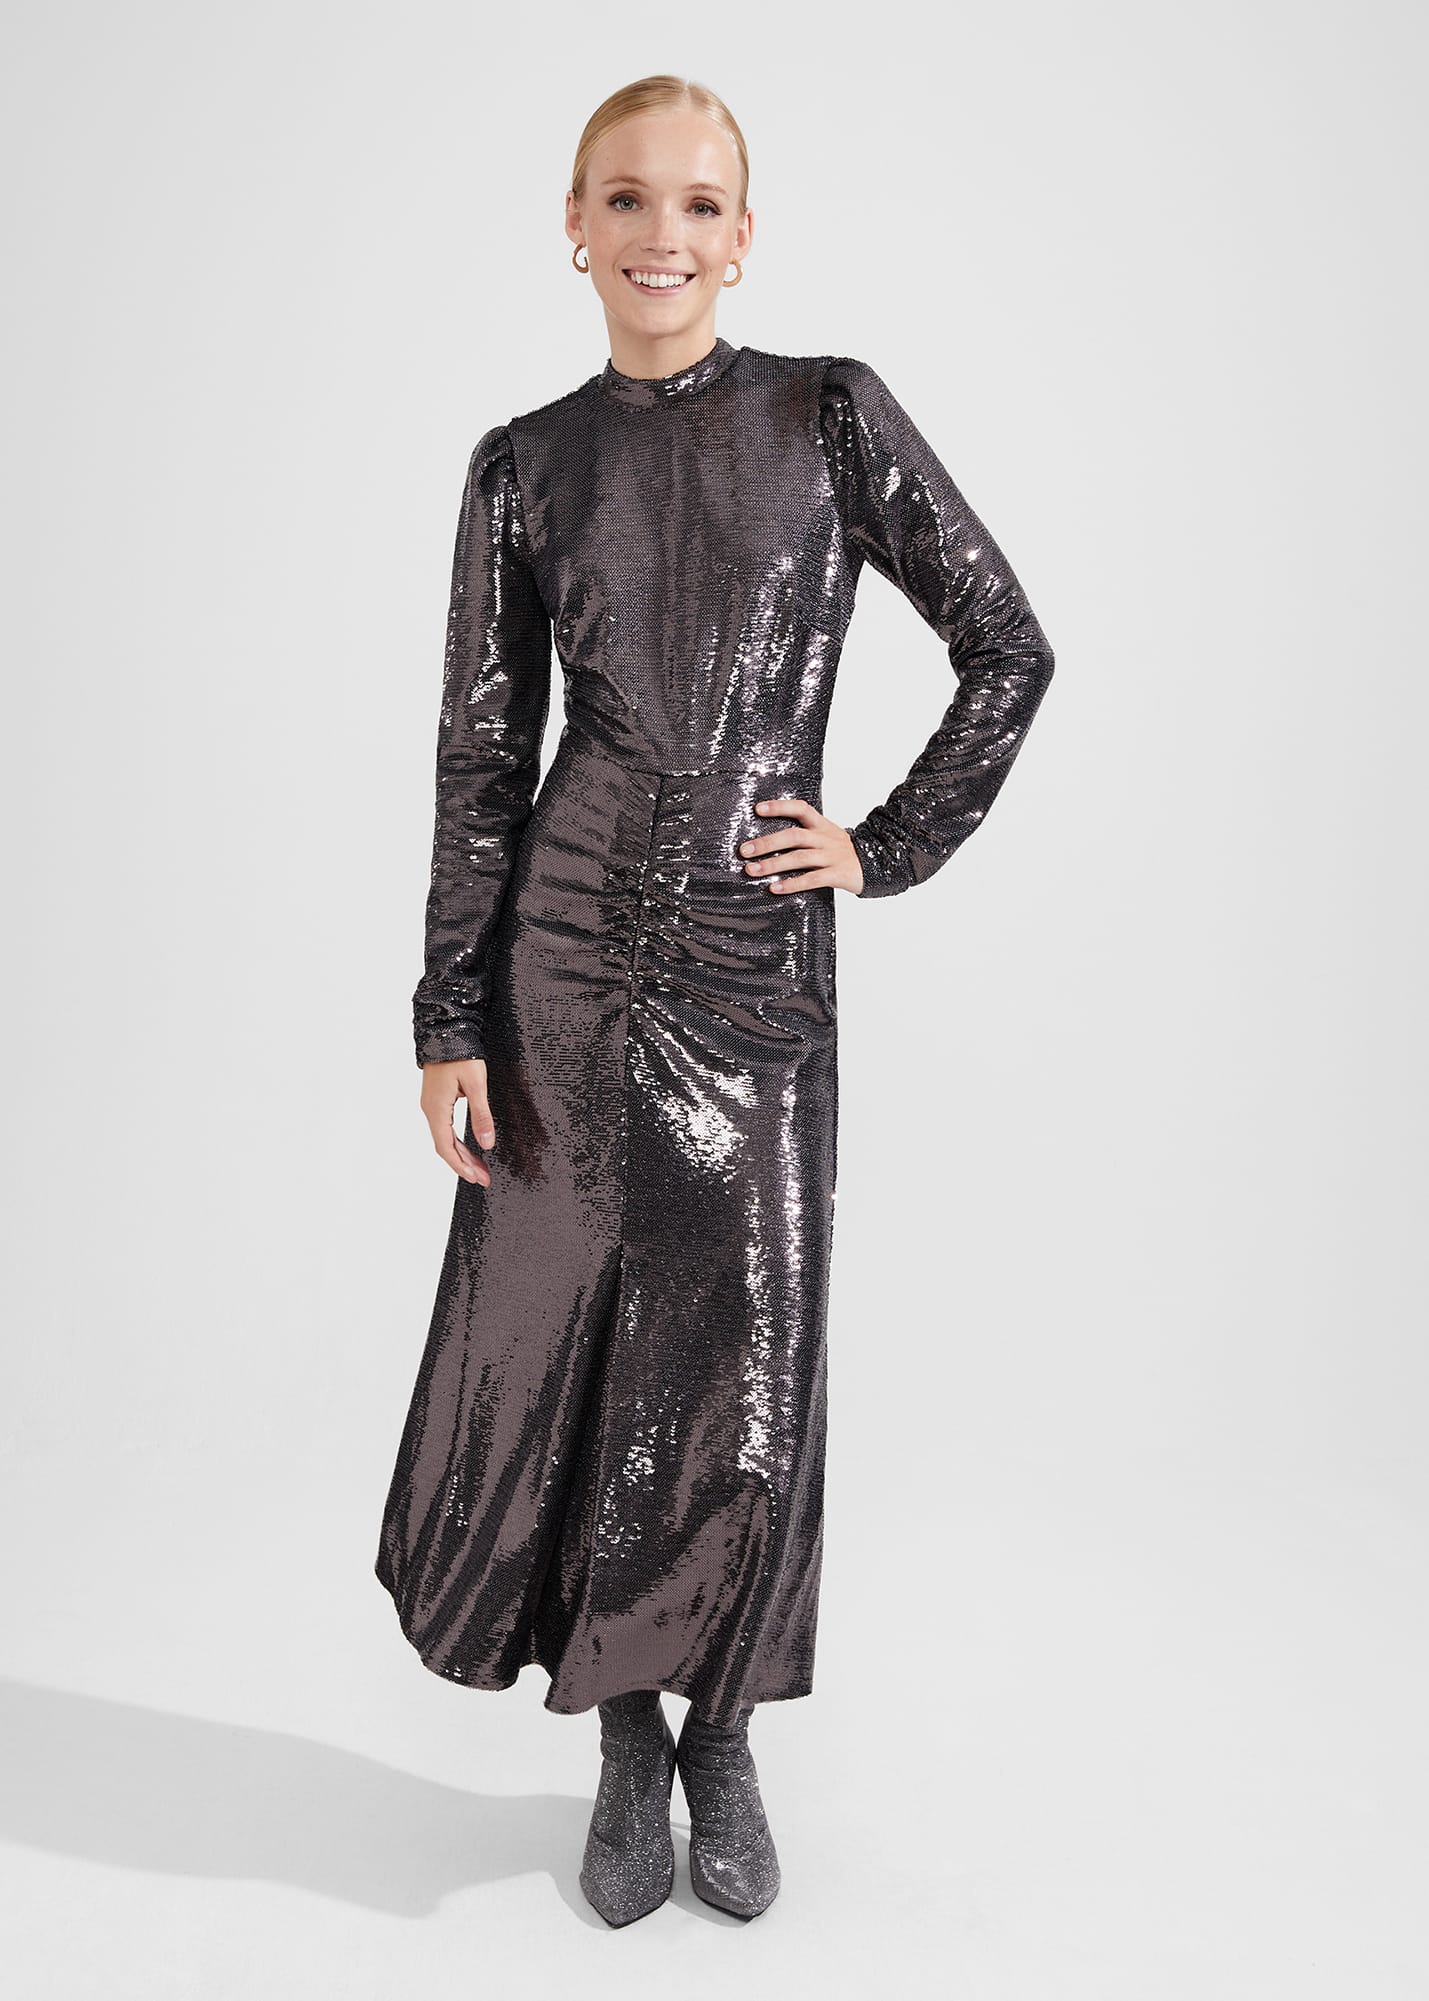 Hobbs Women's Loretta Sequin Dress - Charcoal Grey